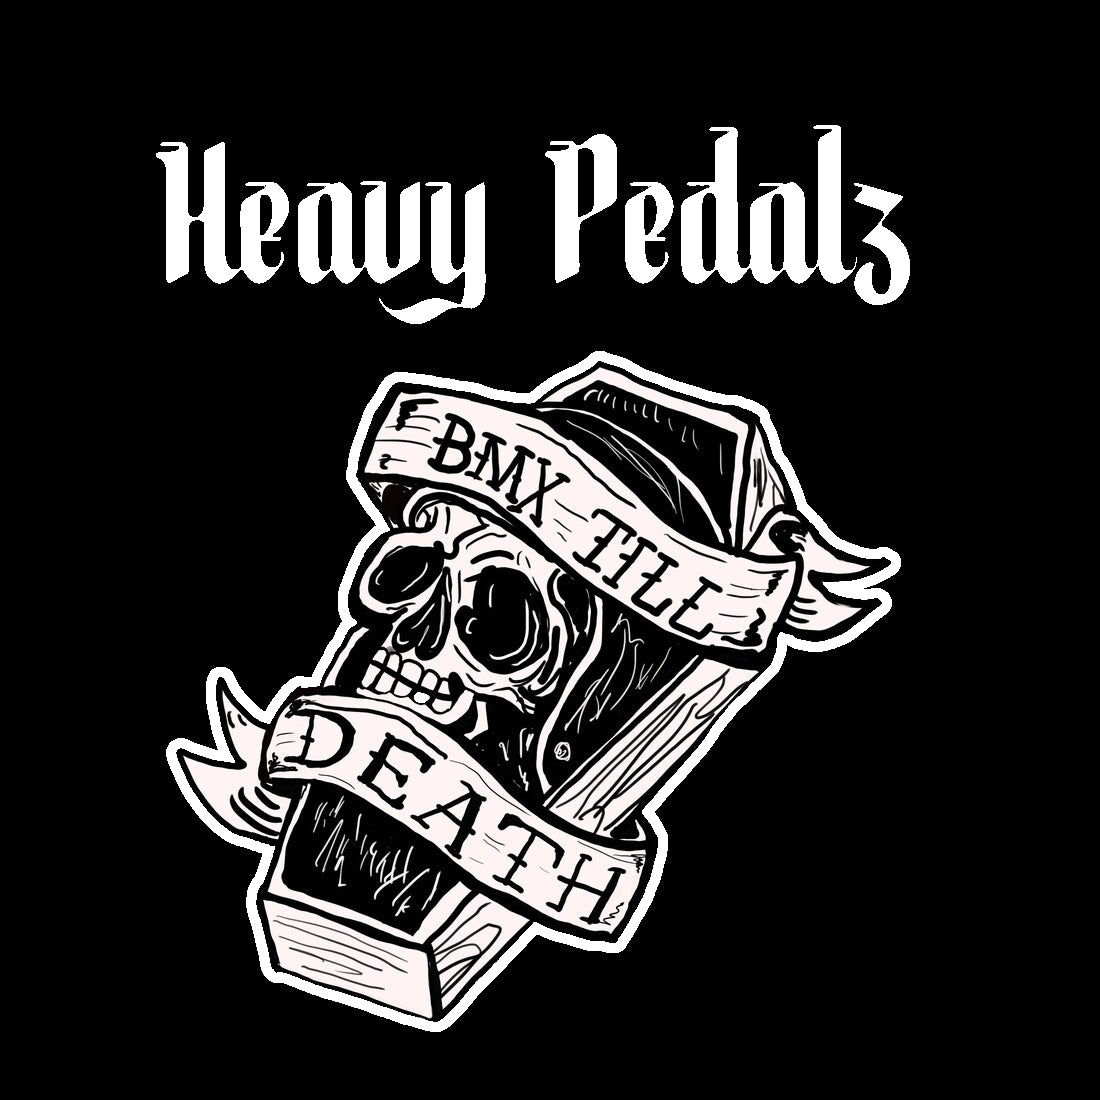 Heavy Pedalz "BMX Til Death" Short Sleeve Tee - Black